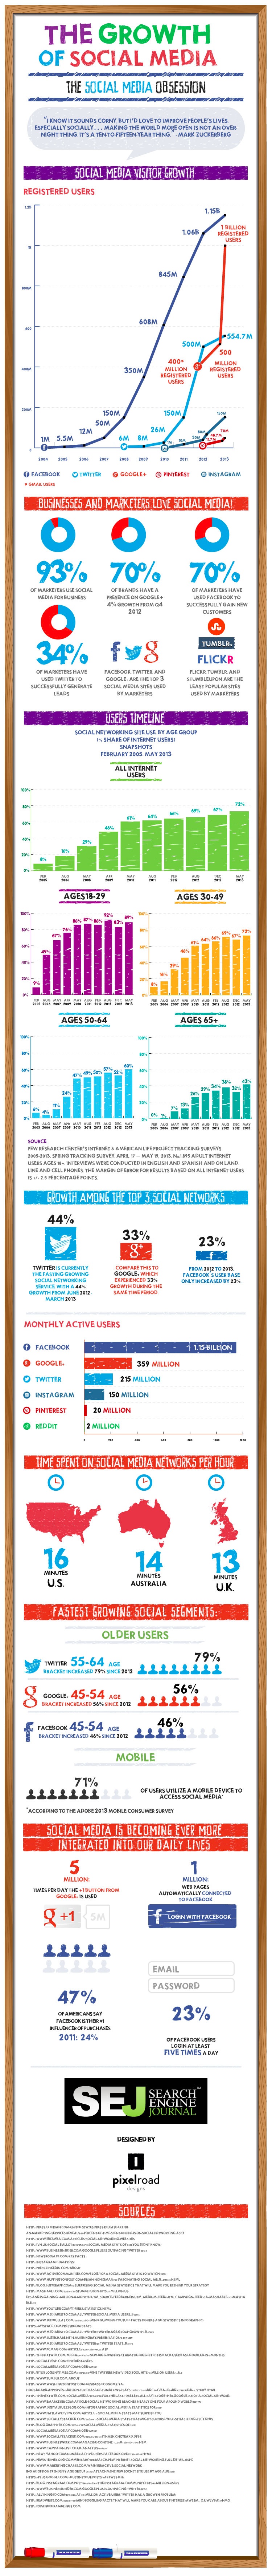 20. Growth of Social Media